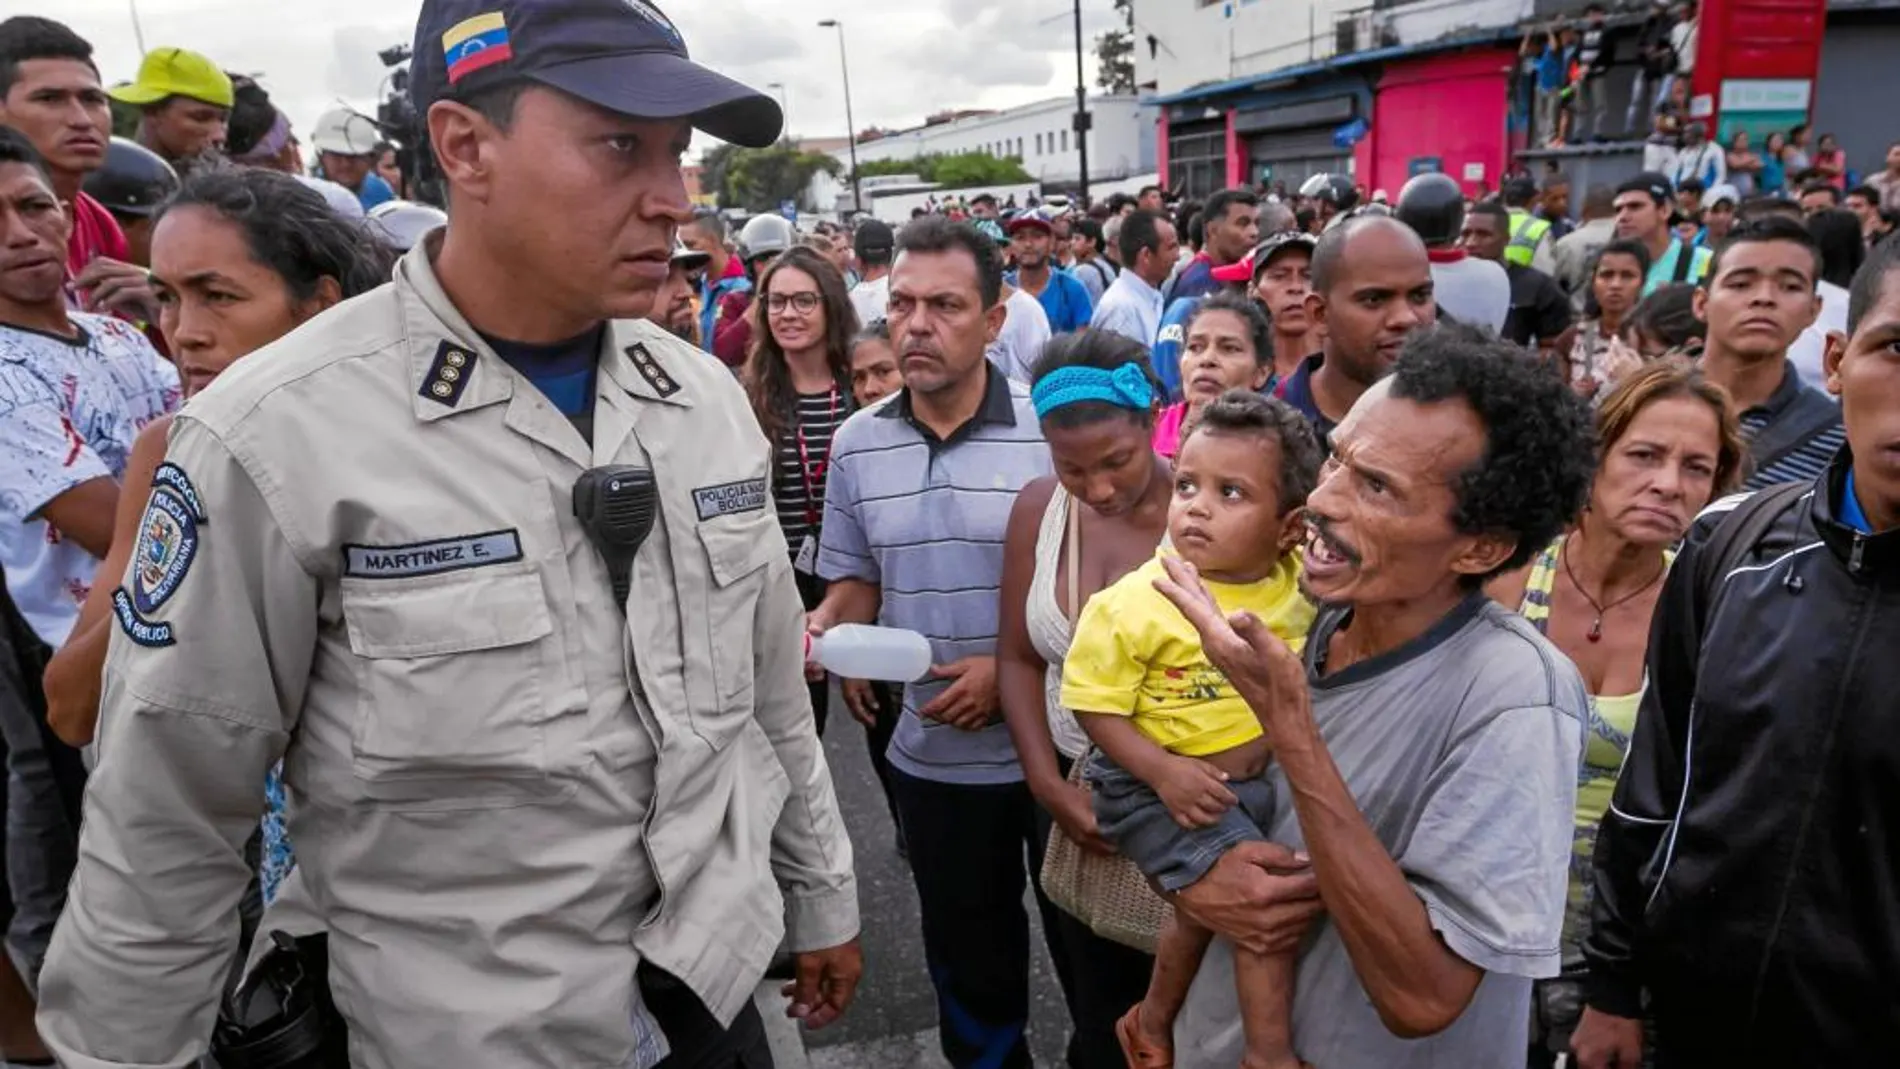 Un hombre con un niño en brazos grita consignas contra un policía en el barrio de Catia, a las afueras de Caracas